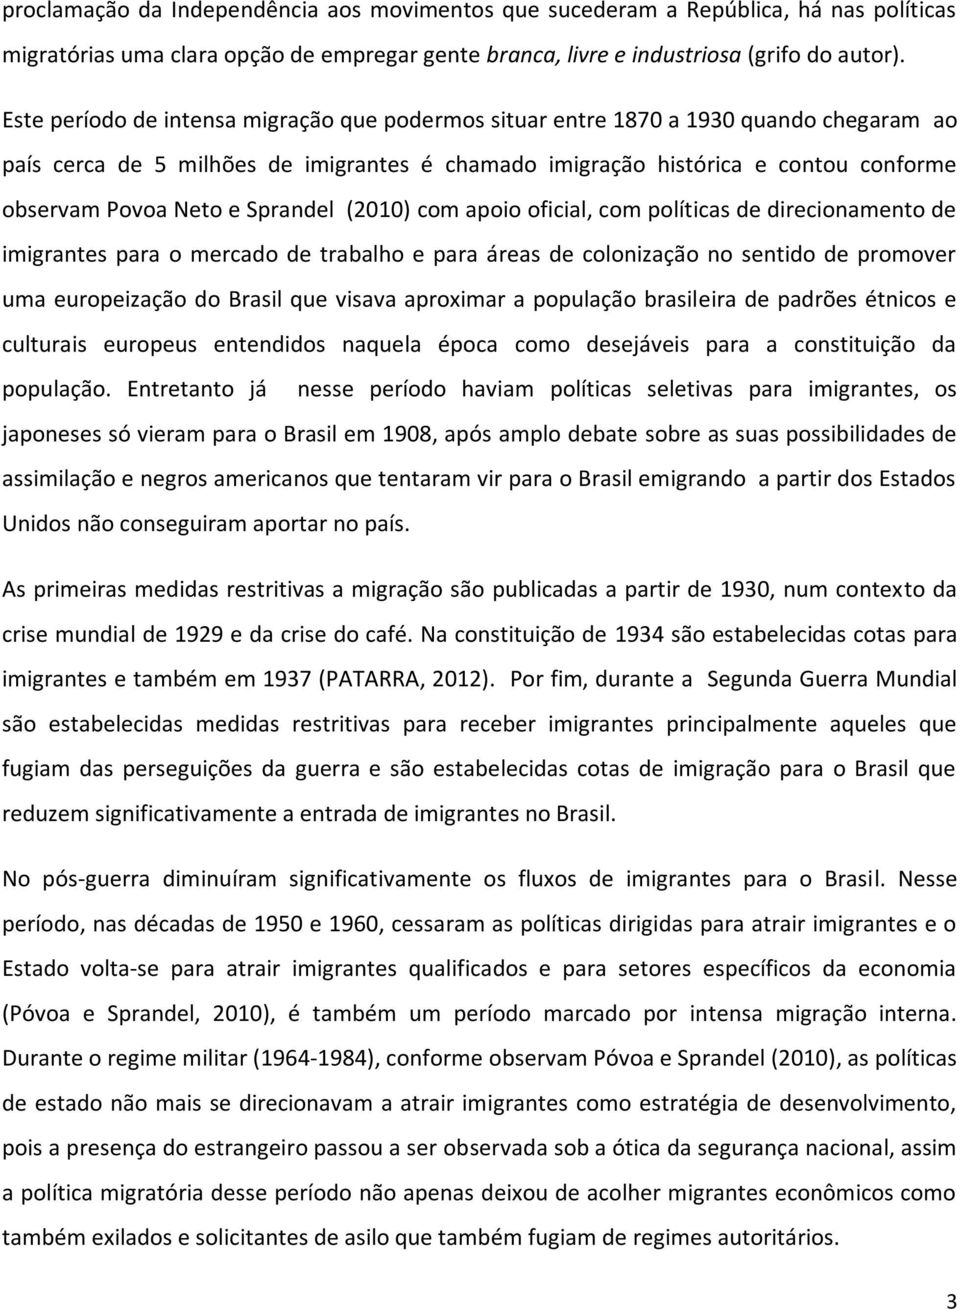 Sprandel (2010) com apoio oficial, com políticas de direcionamento de imigrantes para o mercado de trabalho e para áreas de colonização no sentido de promover uma europeização do Brasil que visava